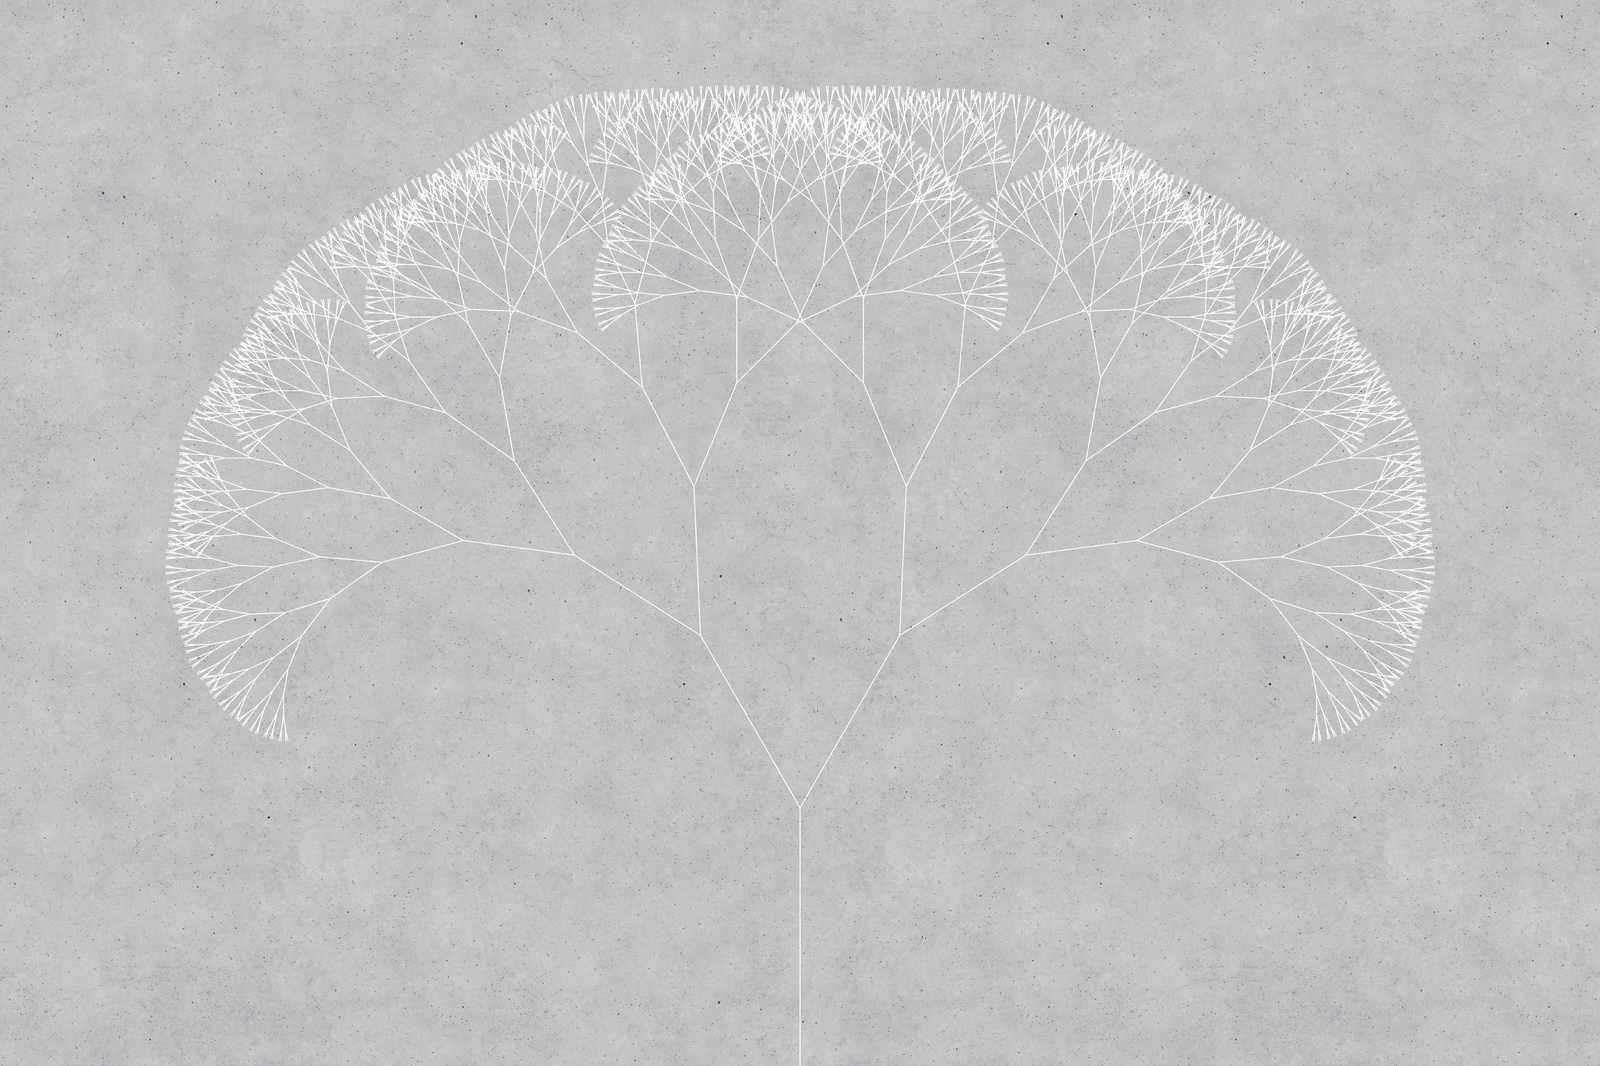             Leinwandbild Pusteblumen Baum | grau, weiß – 0,90 m x 0,60 m
        